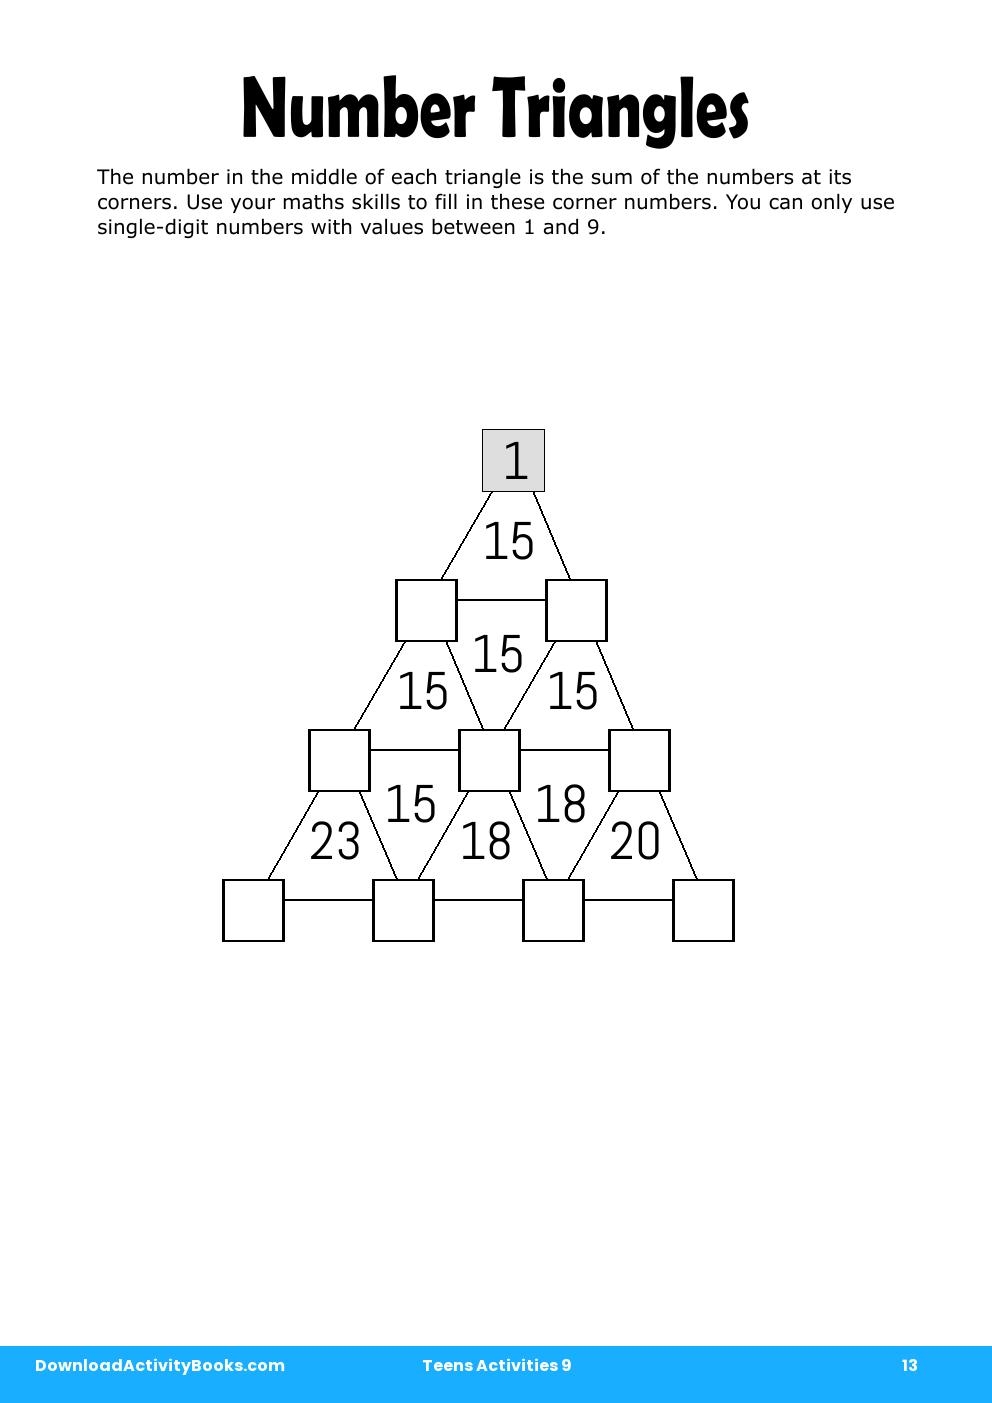 Number Triangles in Teens Activities 9